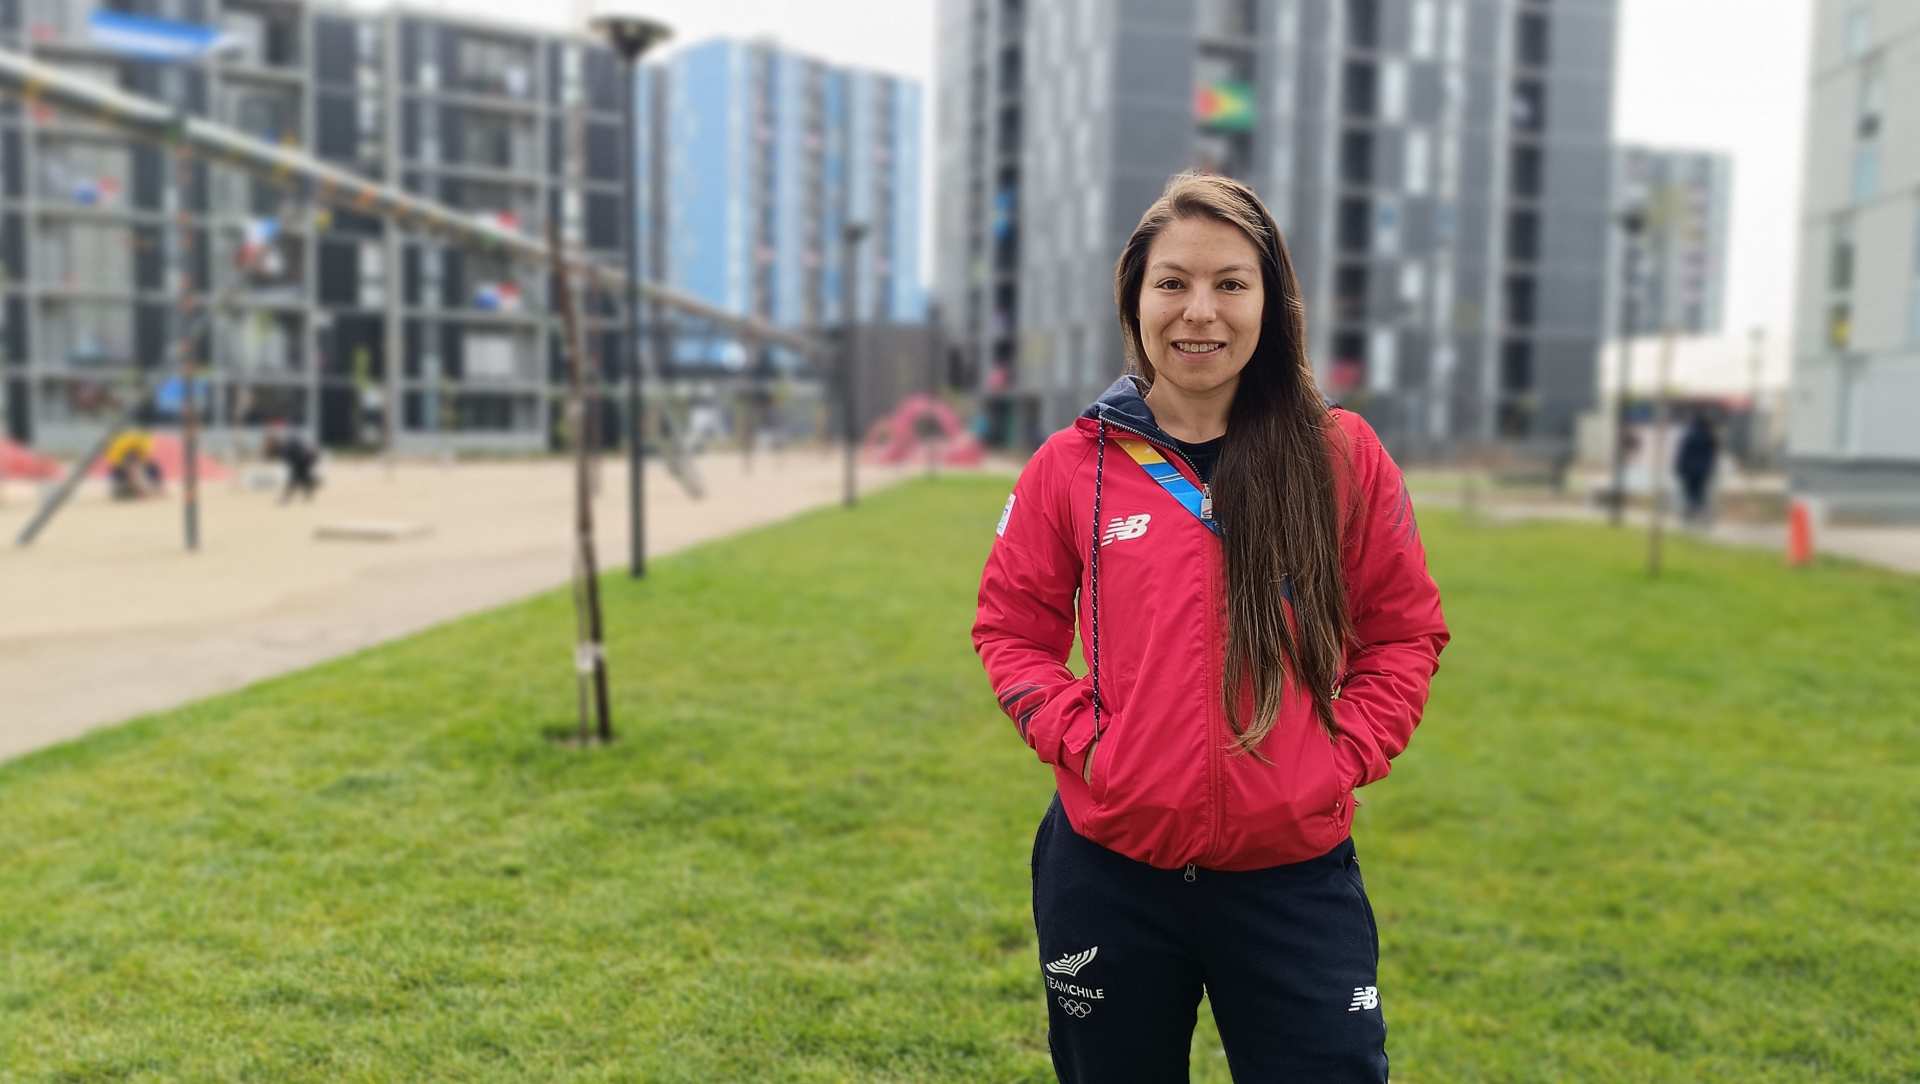 Sofbolista chilena estudia, trabaja y vive su sueño panamericano en Santiago 2023